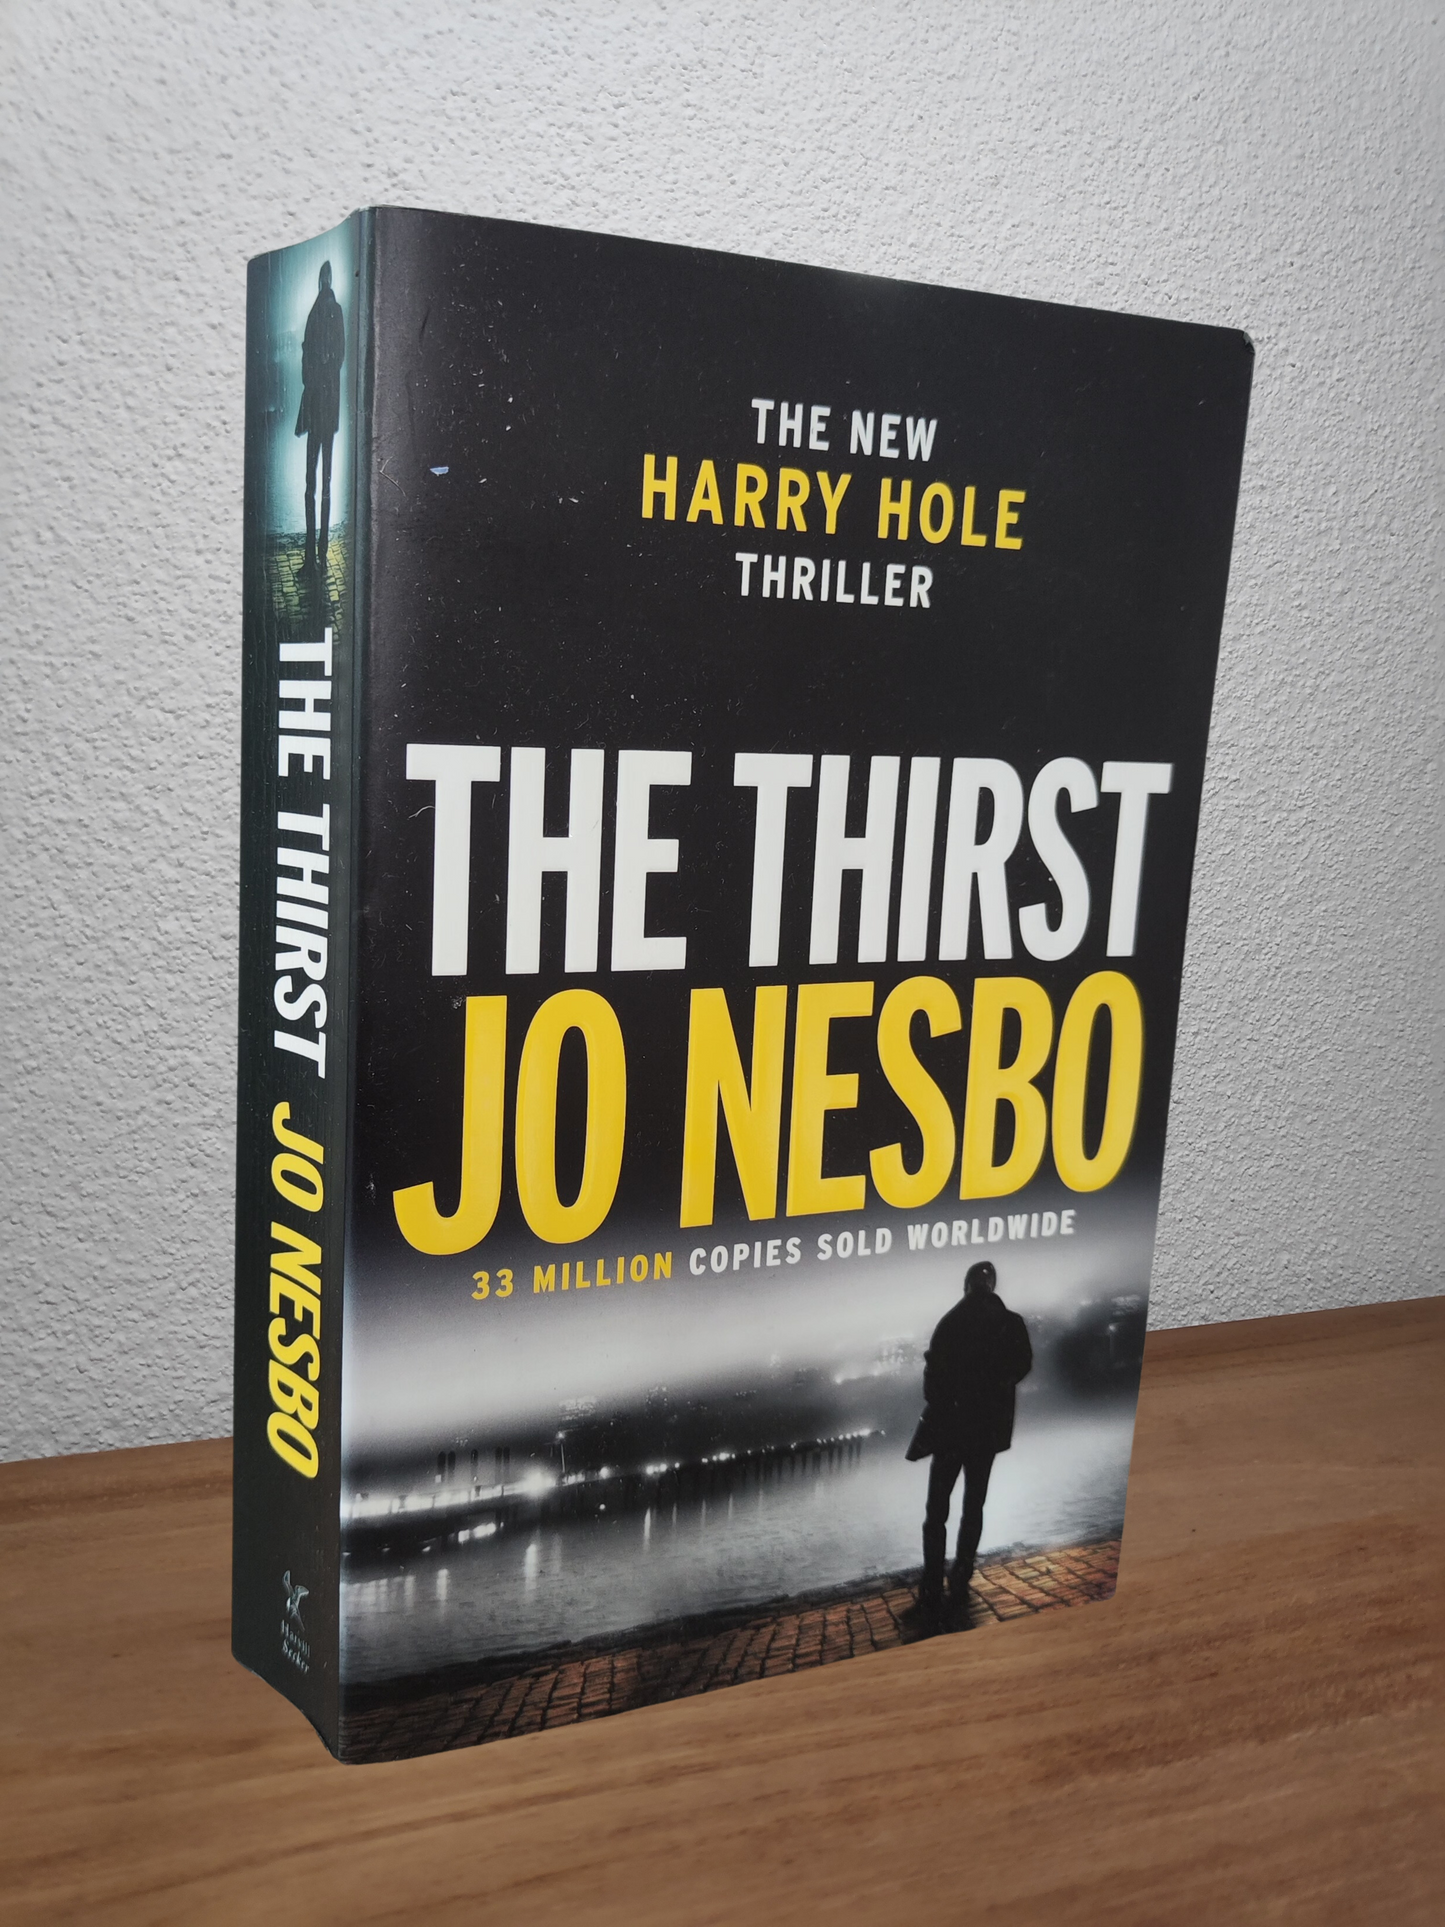 Jo Nesbo - The Thirst (Harry Hole #11)